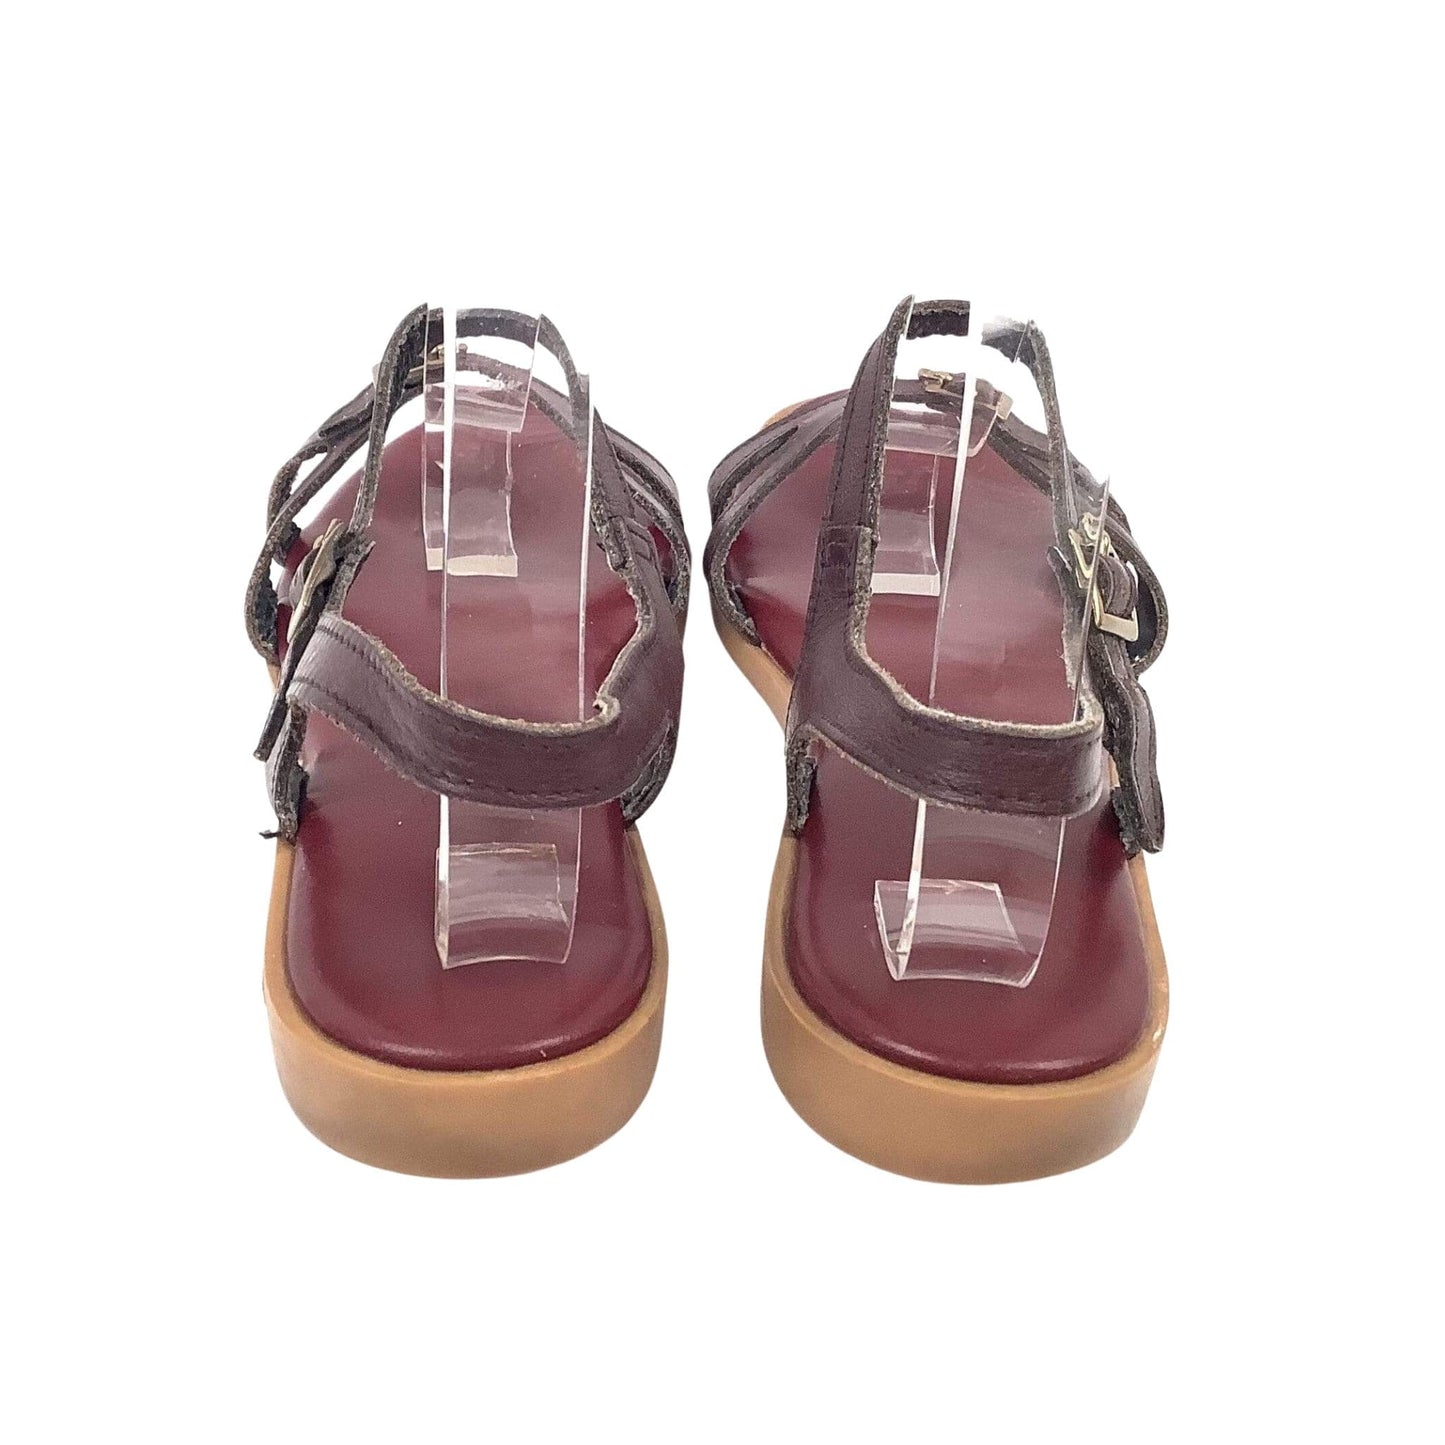 VTG Aigner Flat Sandals 10 / Burgundy / Vintage 1980s